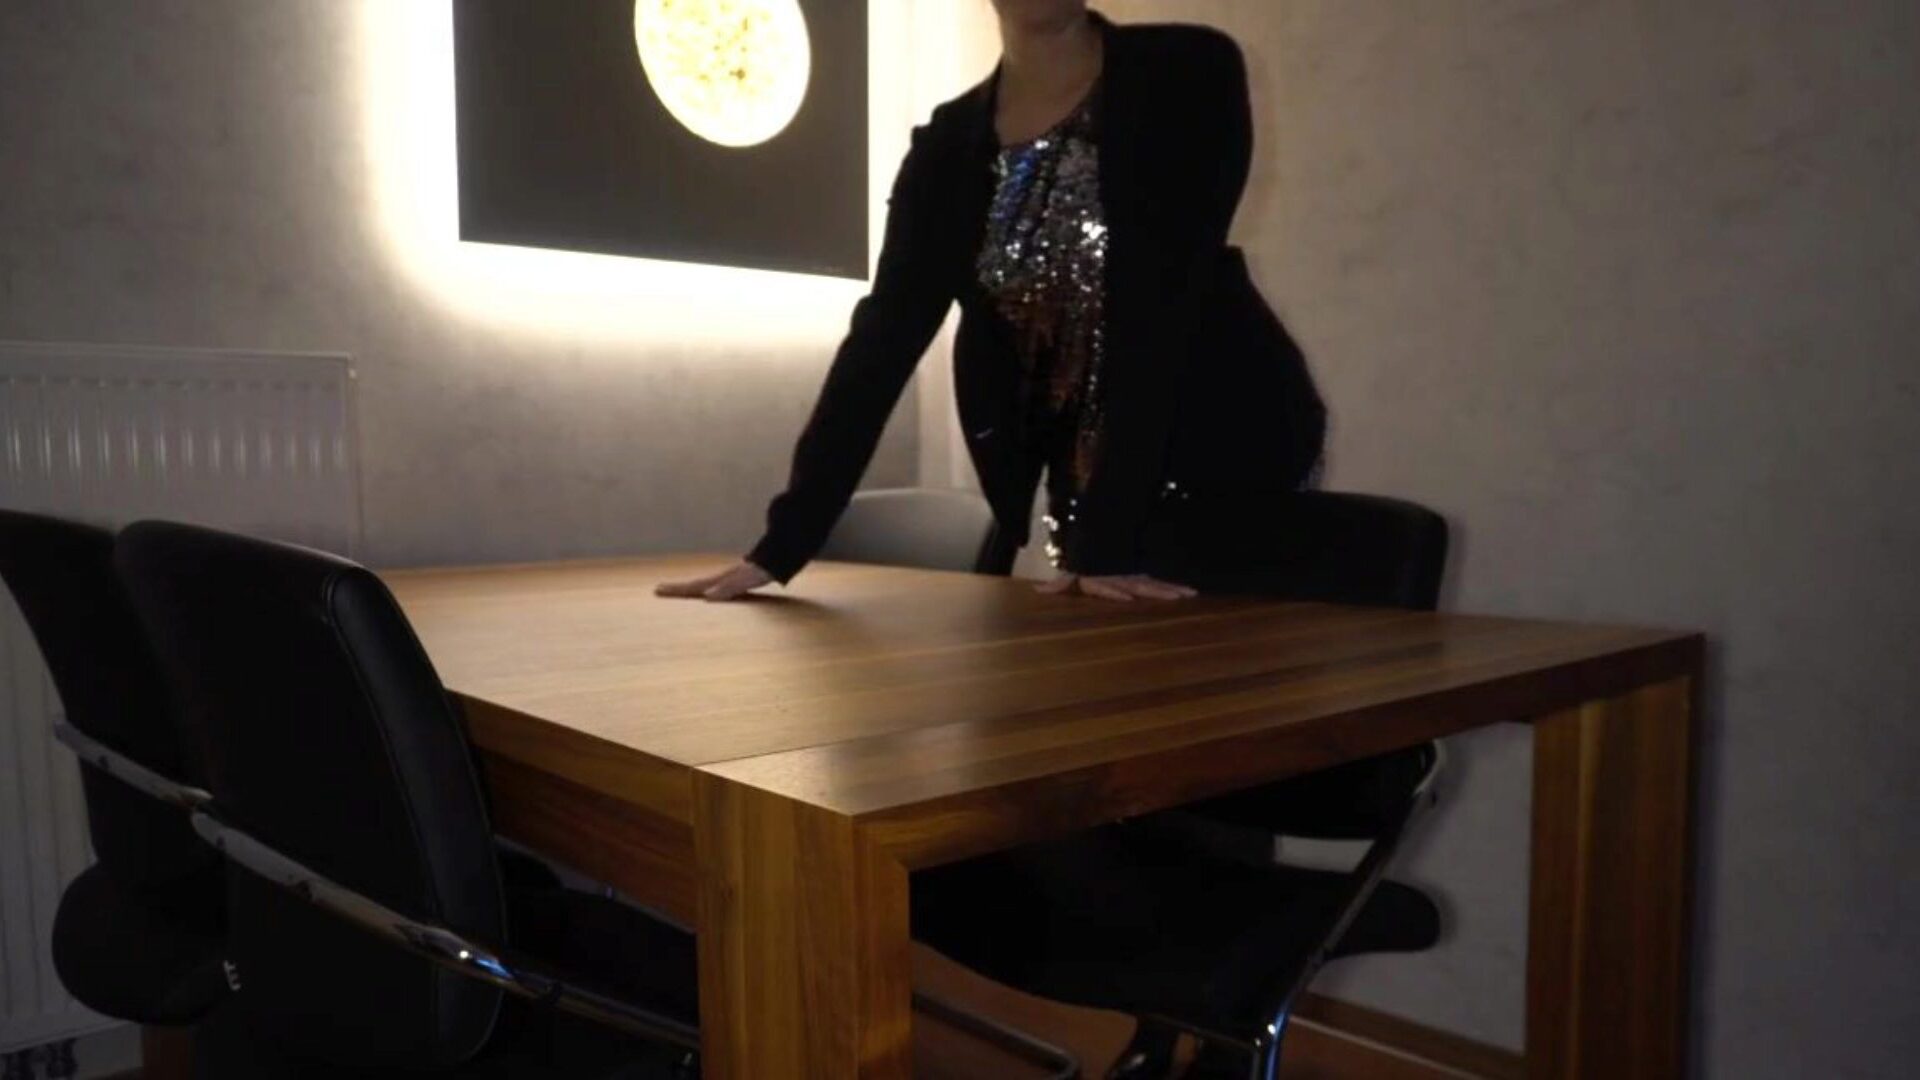 Chef fickt Sekretärin anal auf dem Tisch ... Sieh zu, wie Chef Sekretärin anal auf dem Tisch fickt - Business-Hündin-Episode auf xhamster - die ultimative Schar von kostenlosen dänischen Milf HD-Porno-Tube-Videos